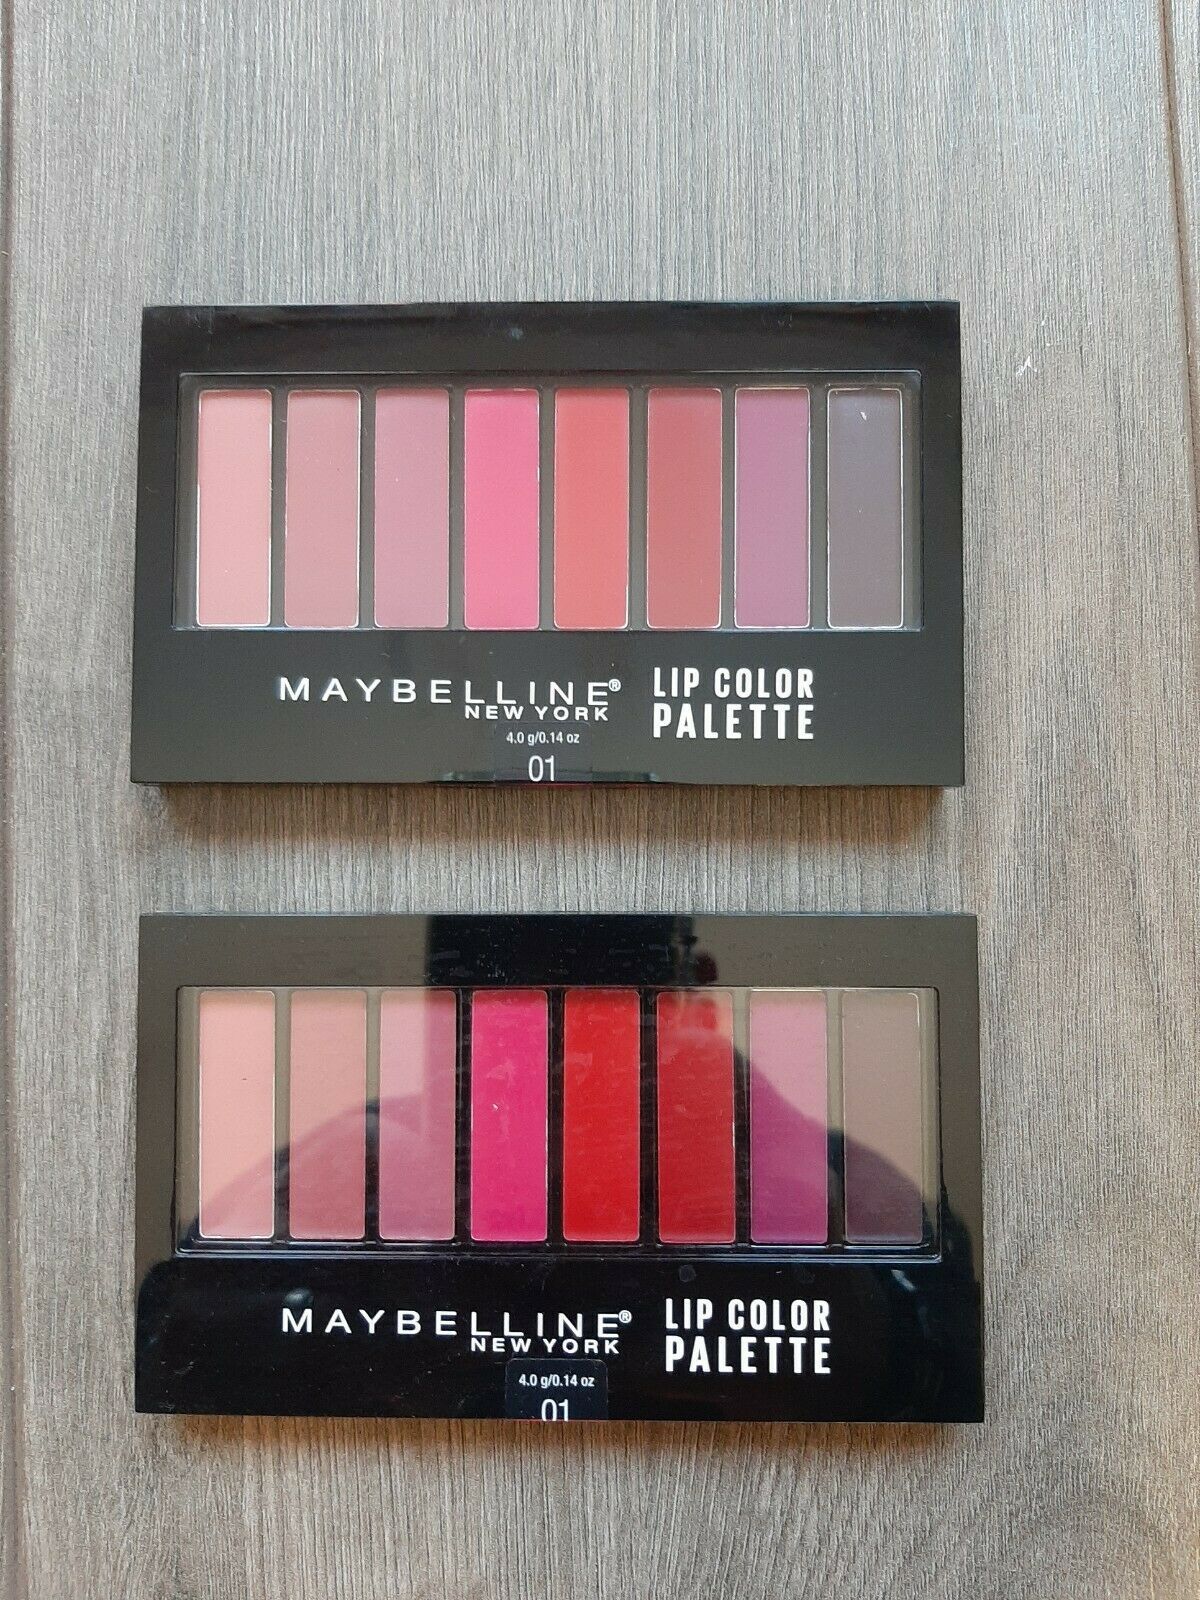 Maybelline Lip Studio Lip Color Palette, 0.14 oz.